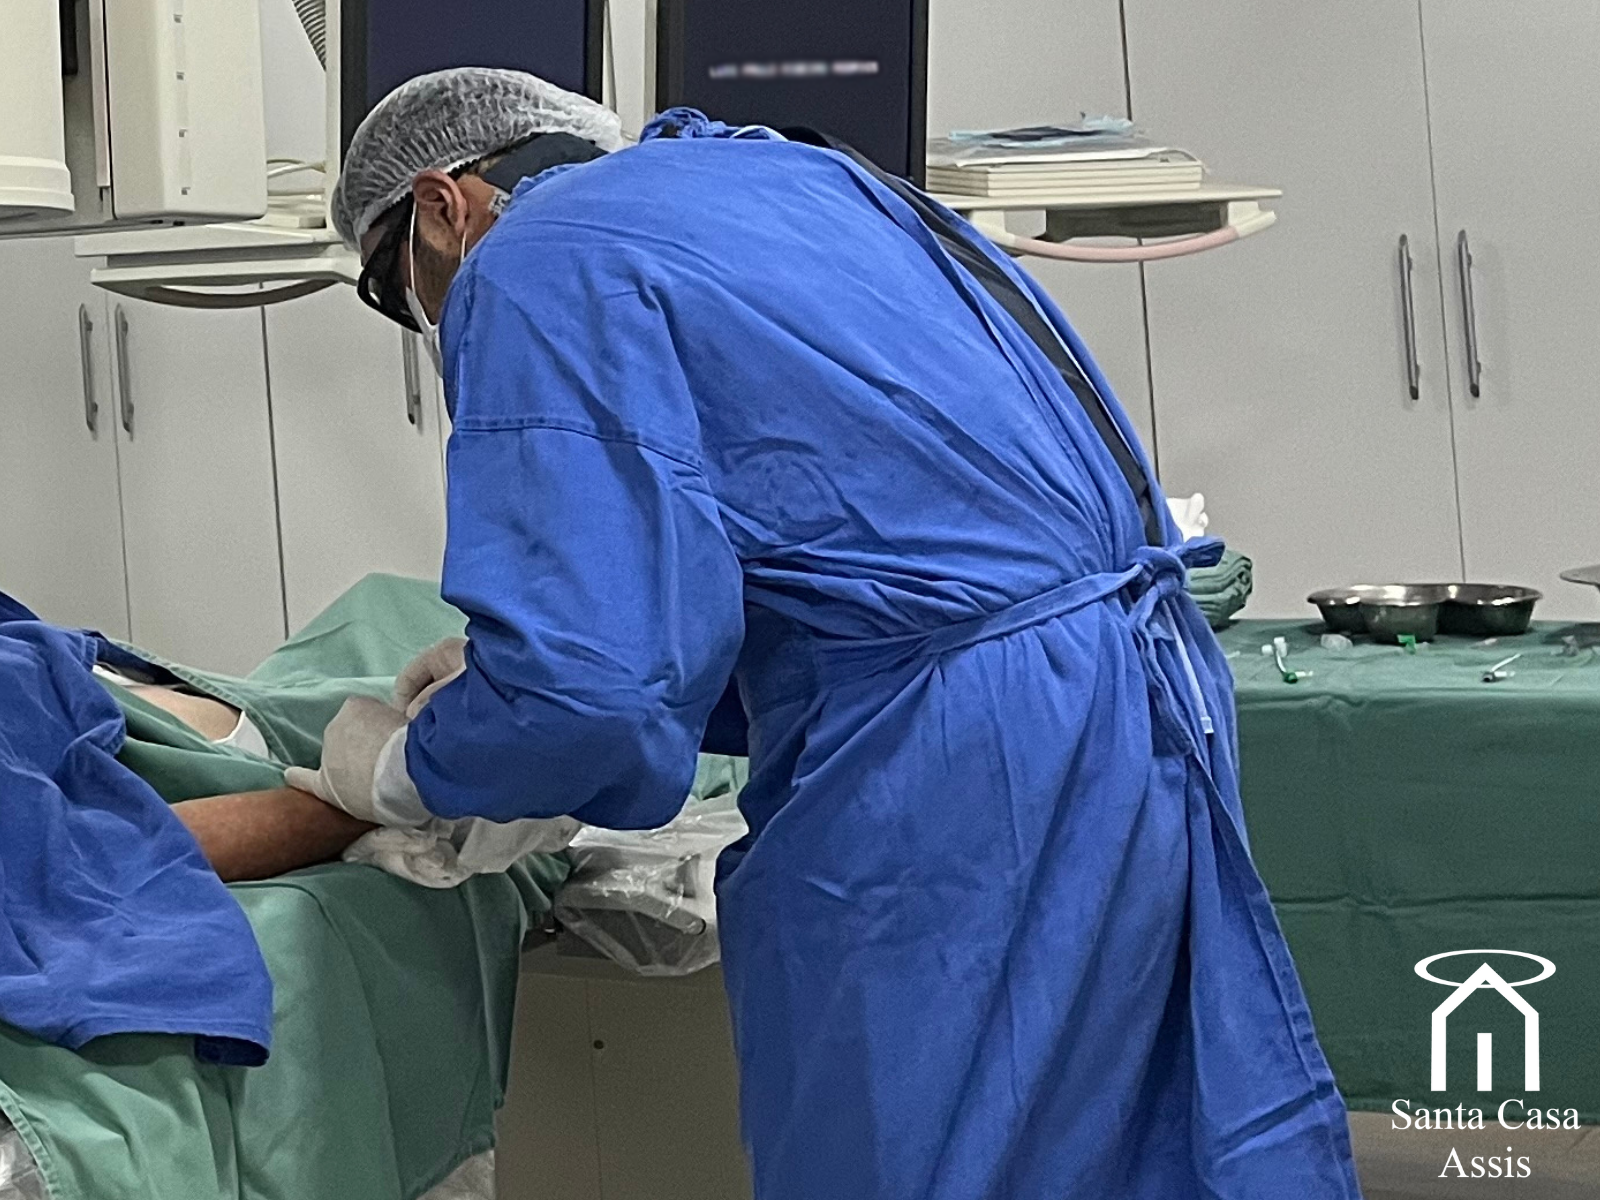 Cateterismo e Angioplastia bem-sucedidos na Santa Casa de Assis salvam vida de paciente encaminhado pela Rede de Urgência Referenciada